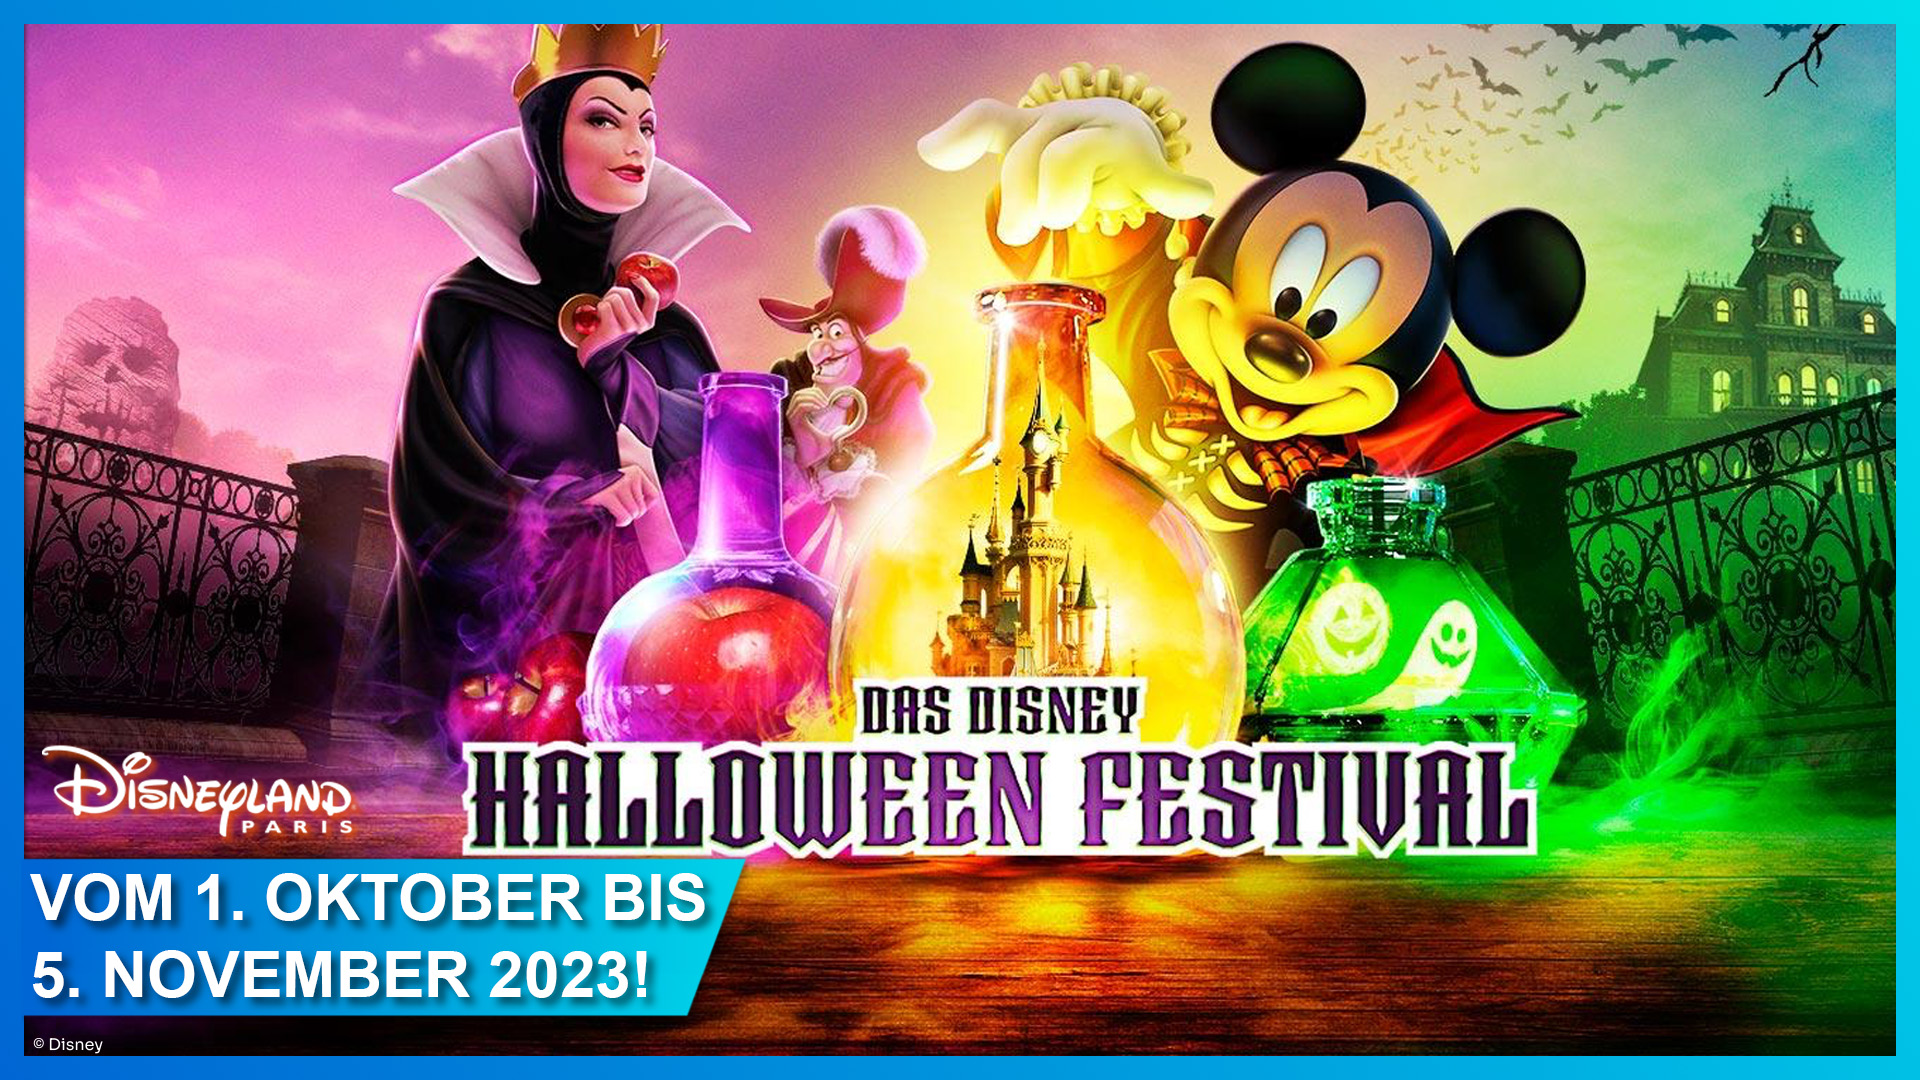 Halloween Saison in Disneyland Paris vom 1. Oktober bis 5. November 2023